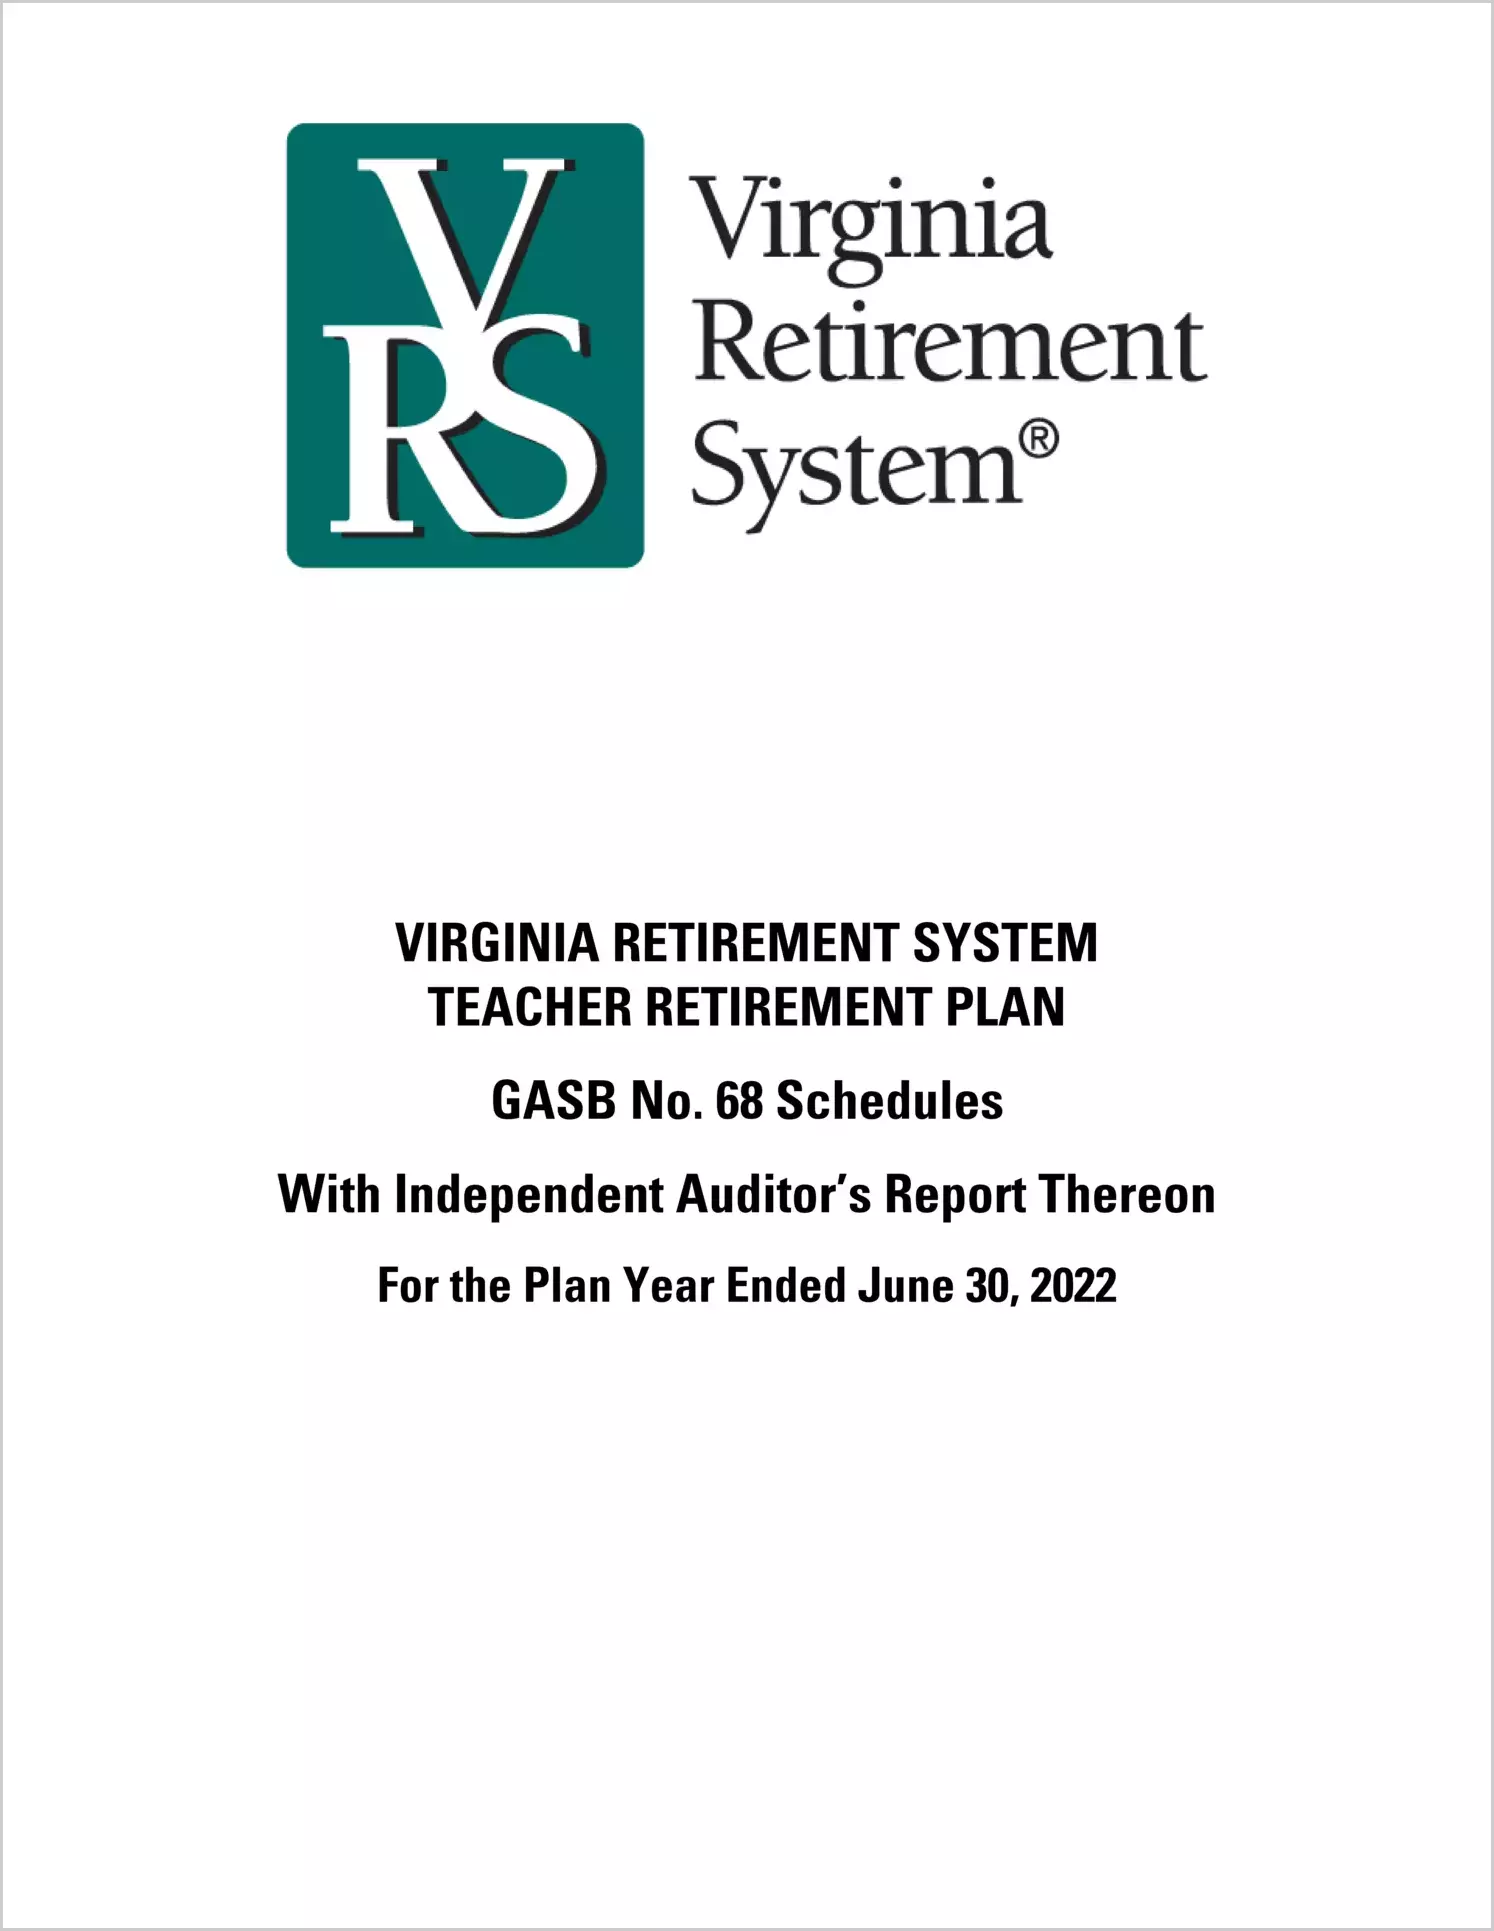 GASB 68 Virginia Retirement System Teacher Retirement Plan for the year ended June 30, 2022